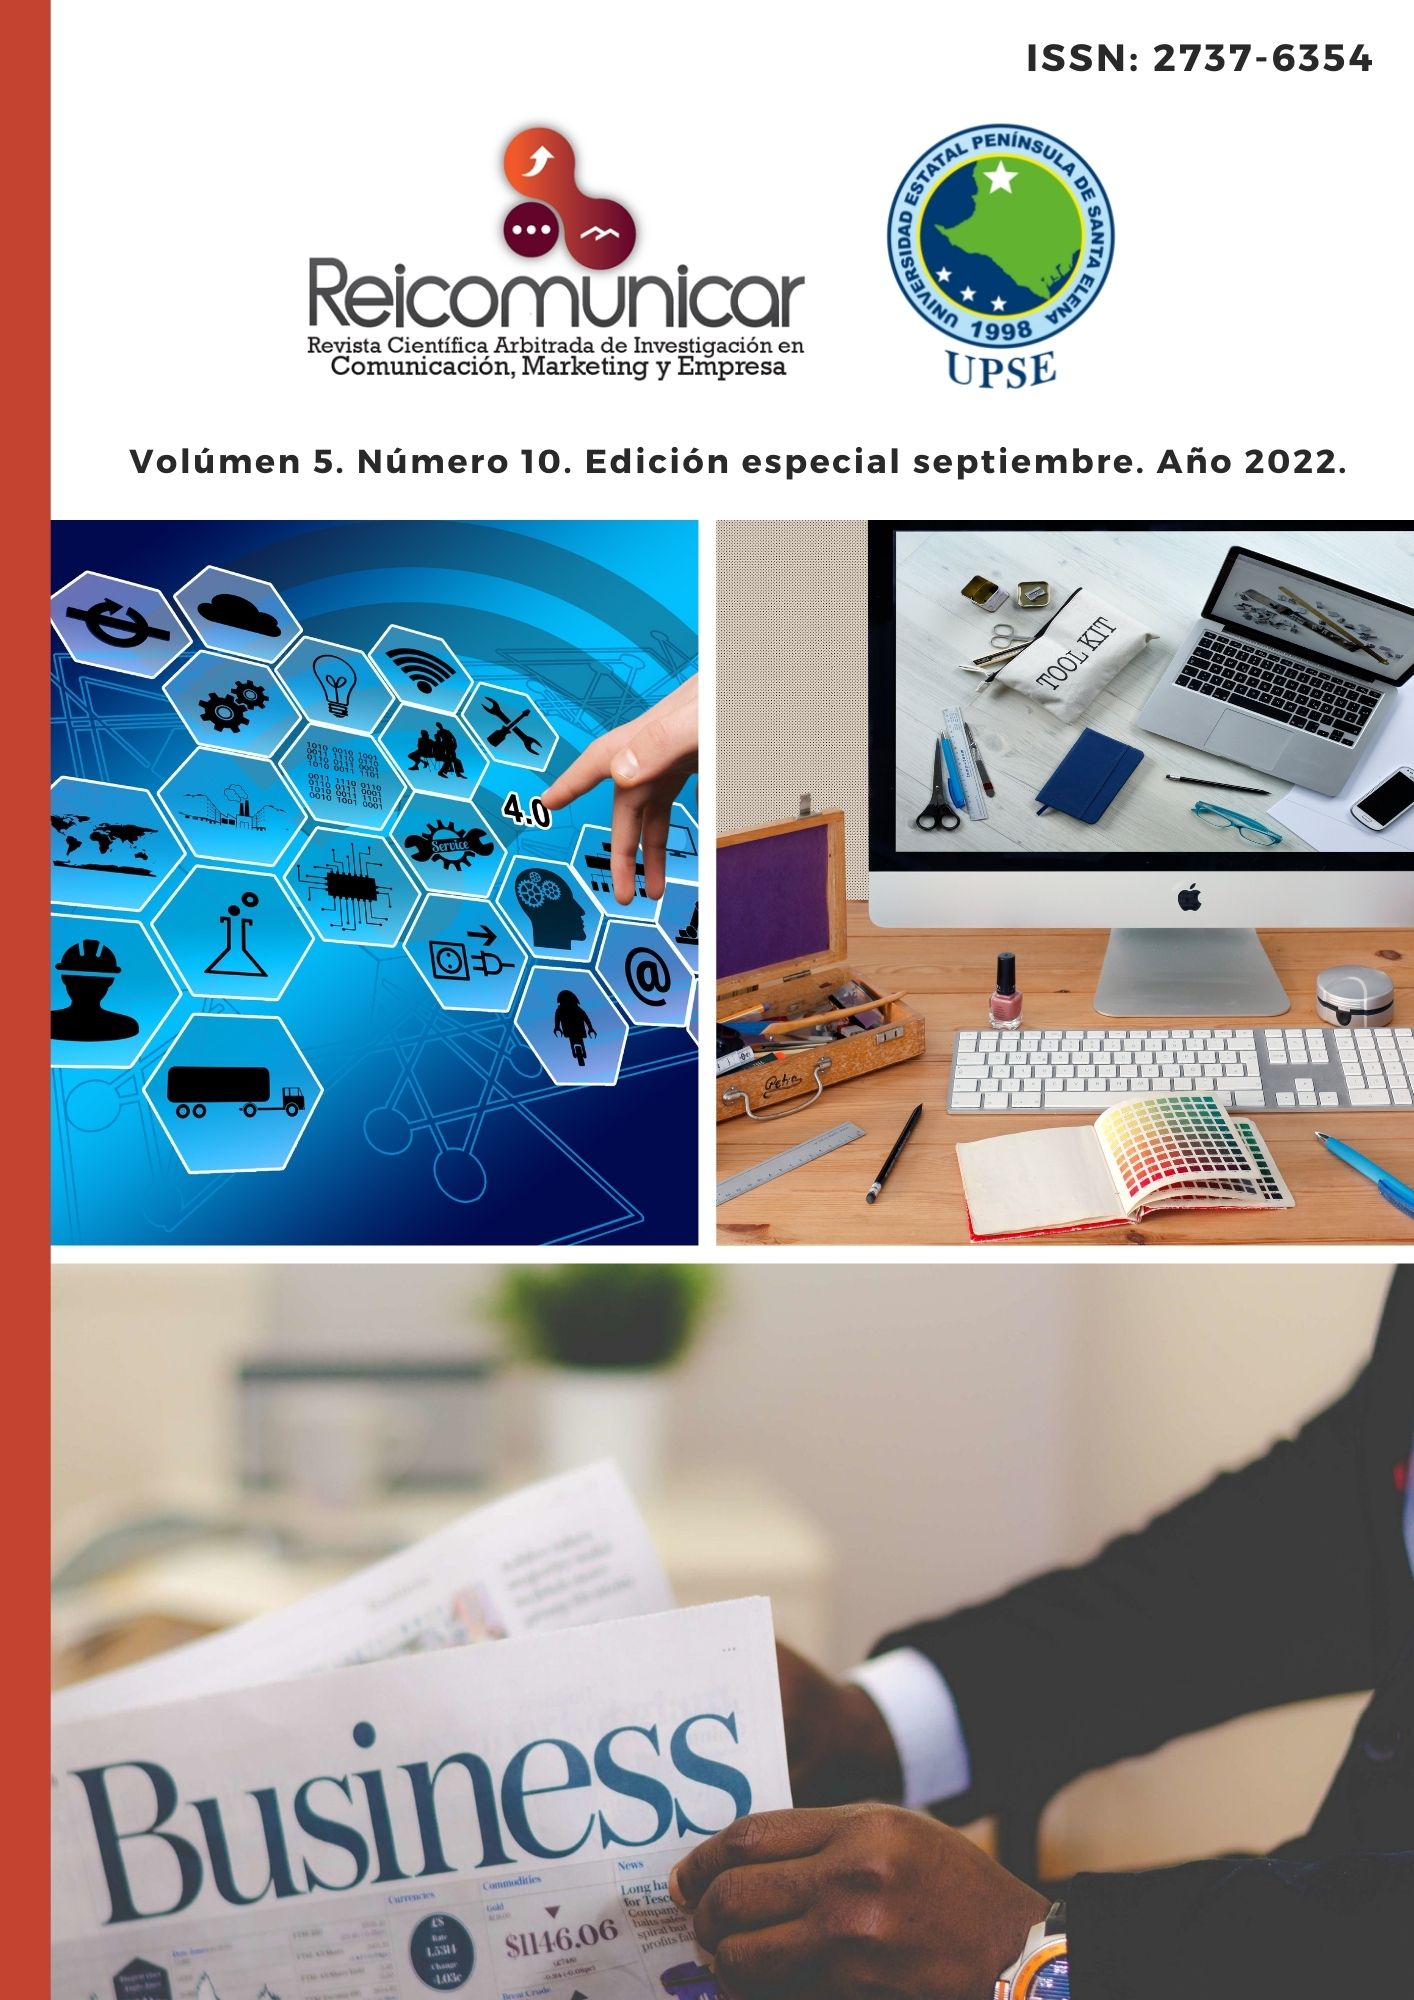 					Ver Vol. 5 Núm. 10 Ed. esp. (2022): Revista Científica Arbitrada de Investigación en Comunicación, Marketing y Empresa REICOMUNICAR. (Edición especial septiembre 2022)
				